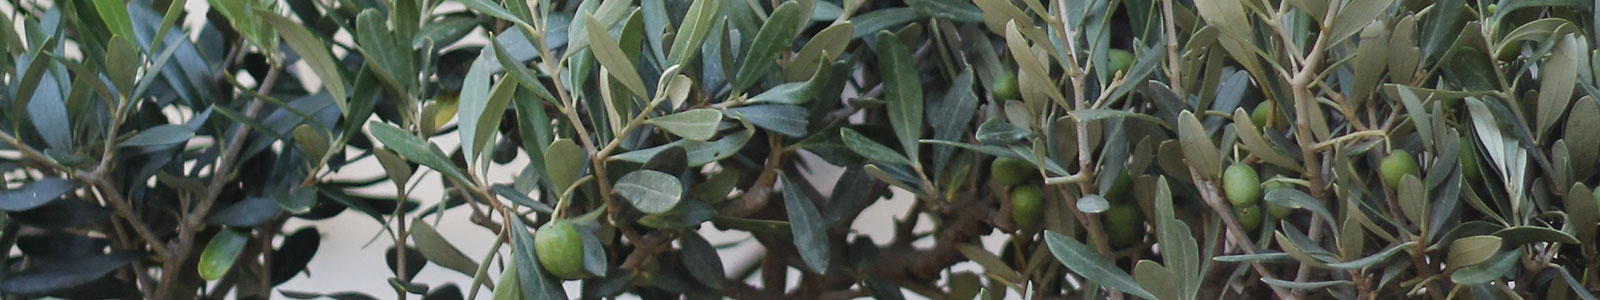 Olive banner